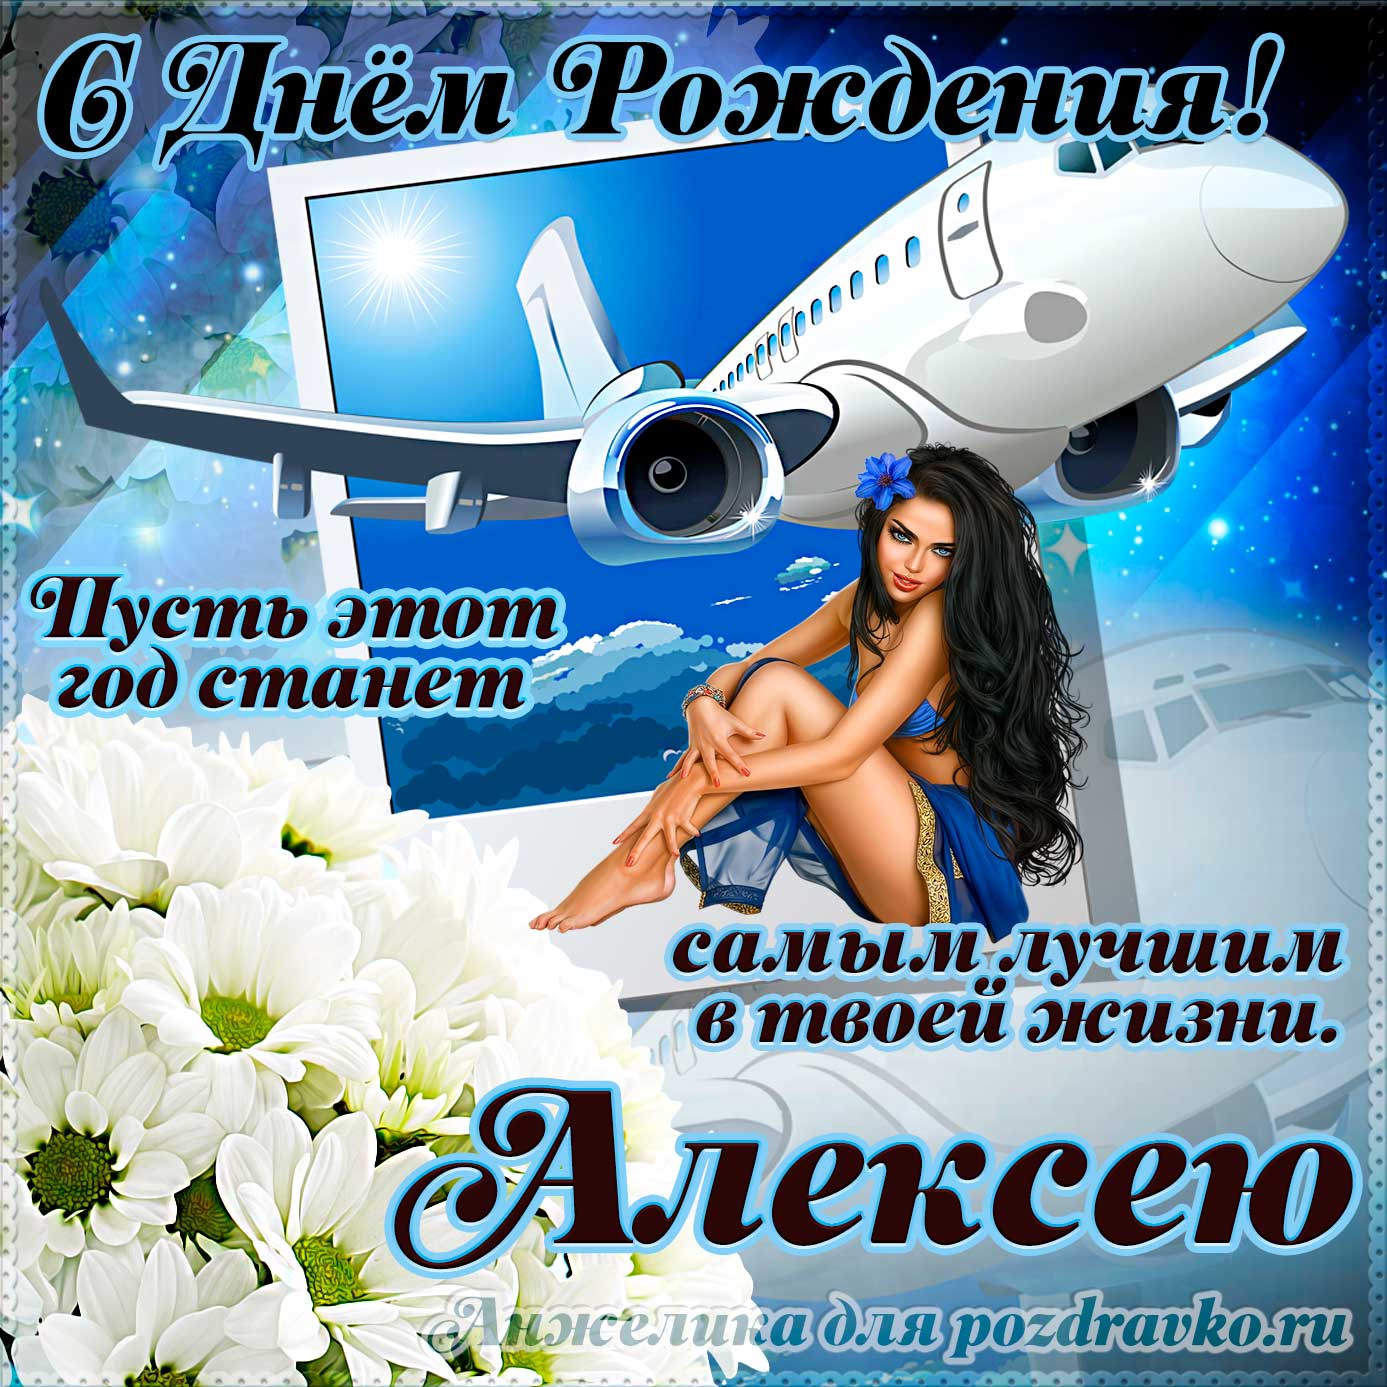 Открытка - Алексею на день рождения с красивым пожеланием самолетом и девушкой. Скачать бесплатно или отправить картинку.